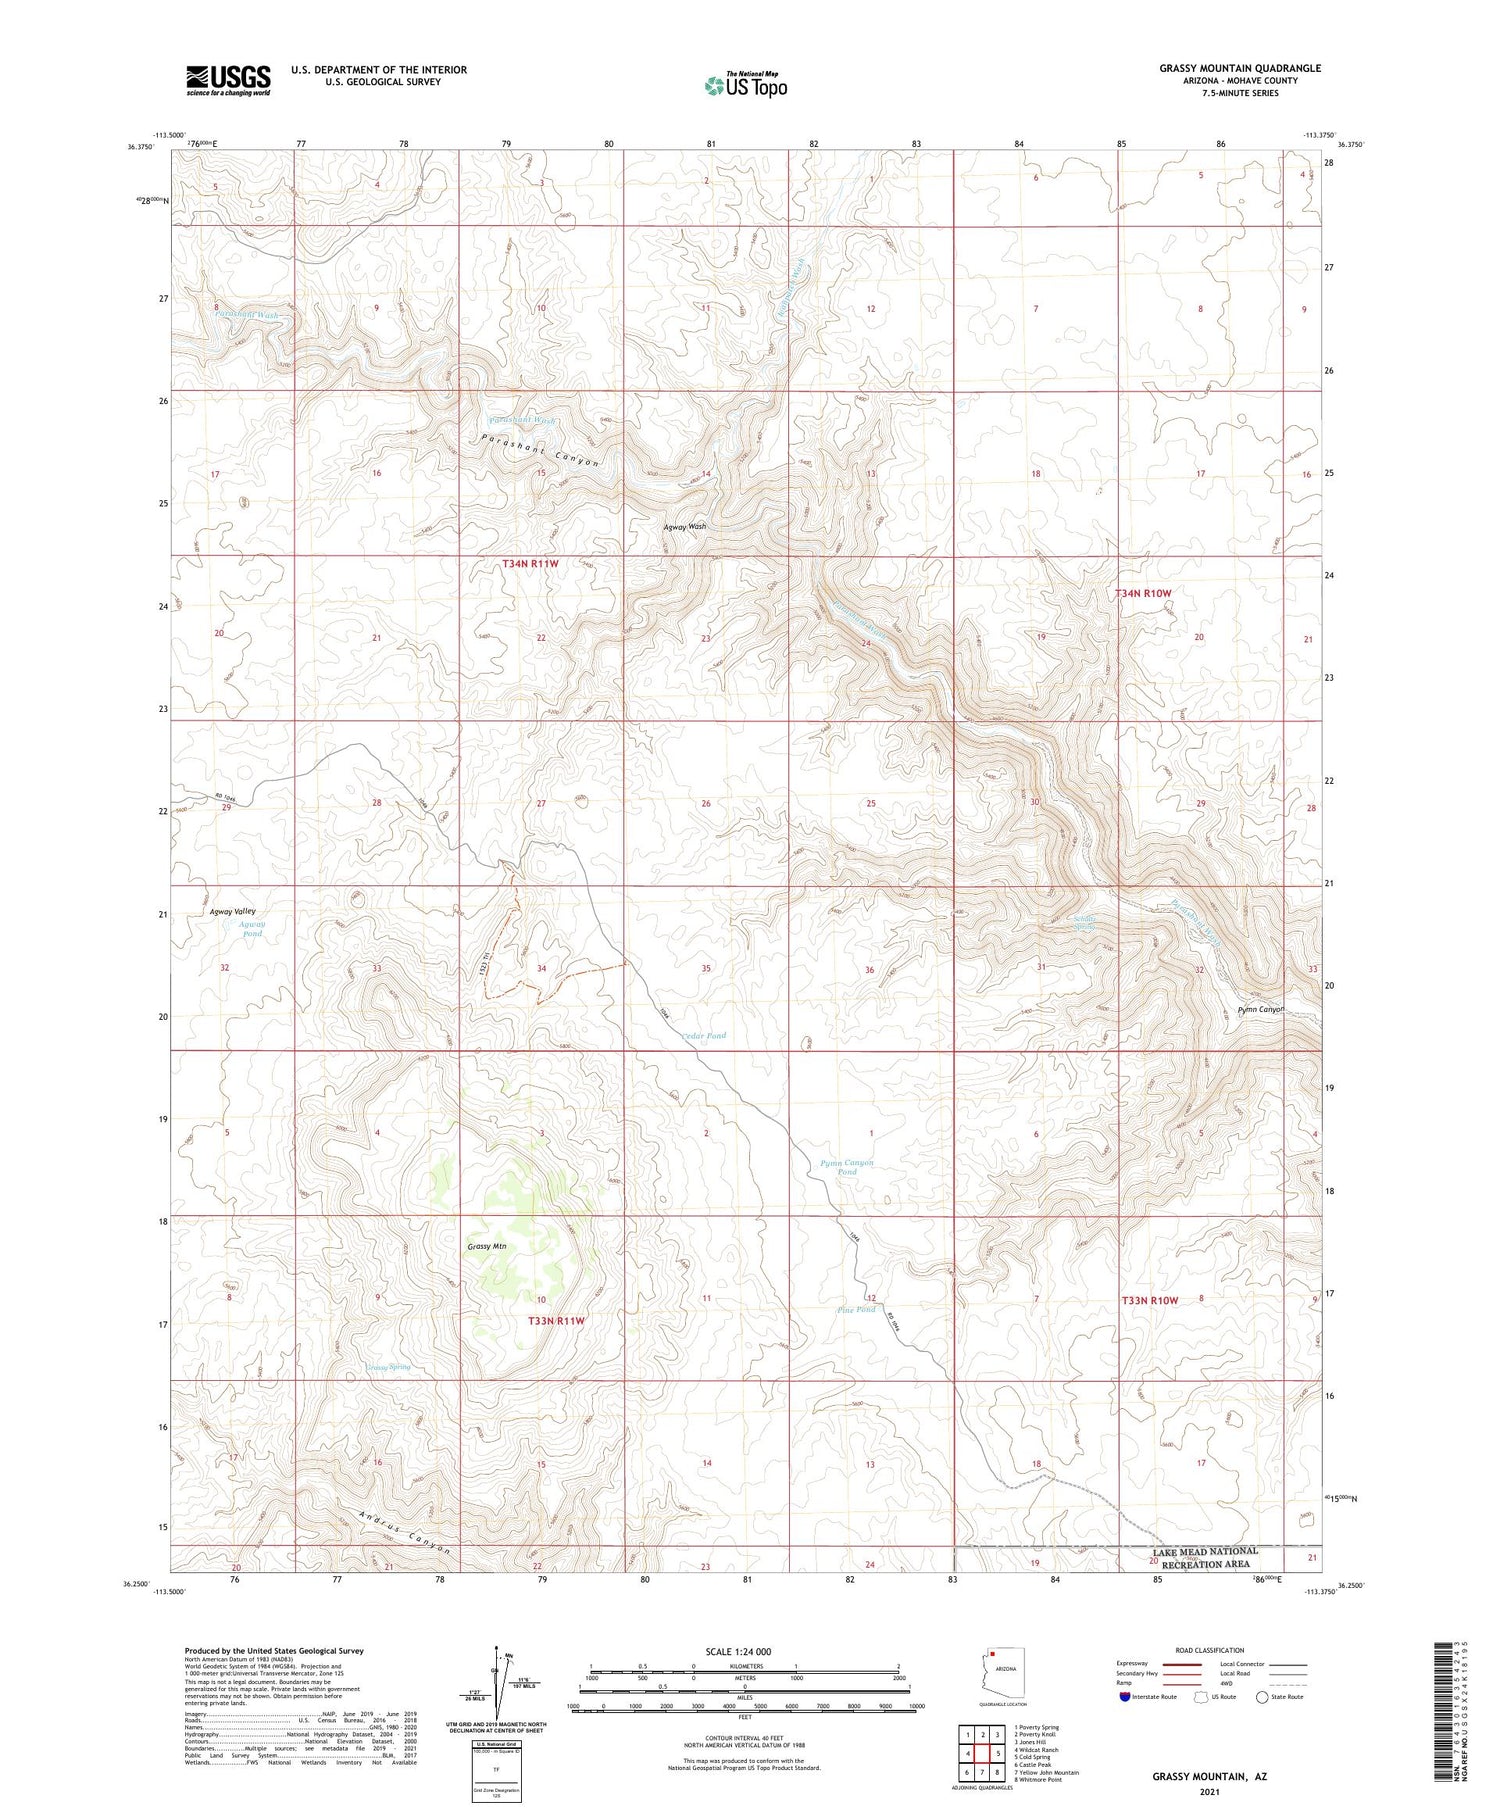 Grassy Mountain Arizona US Topo Map Image